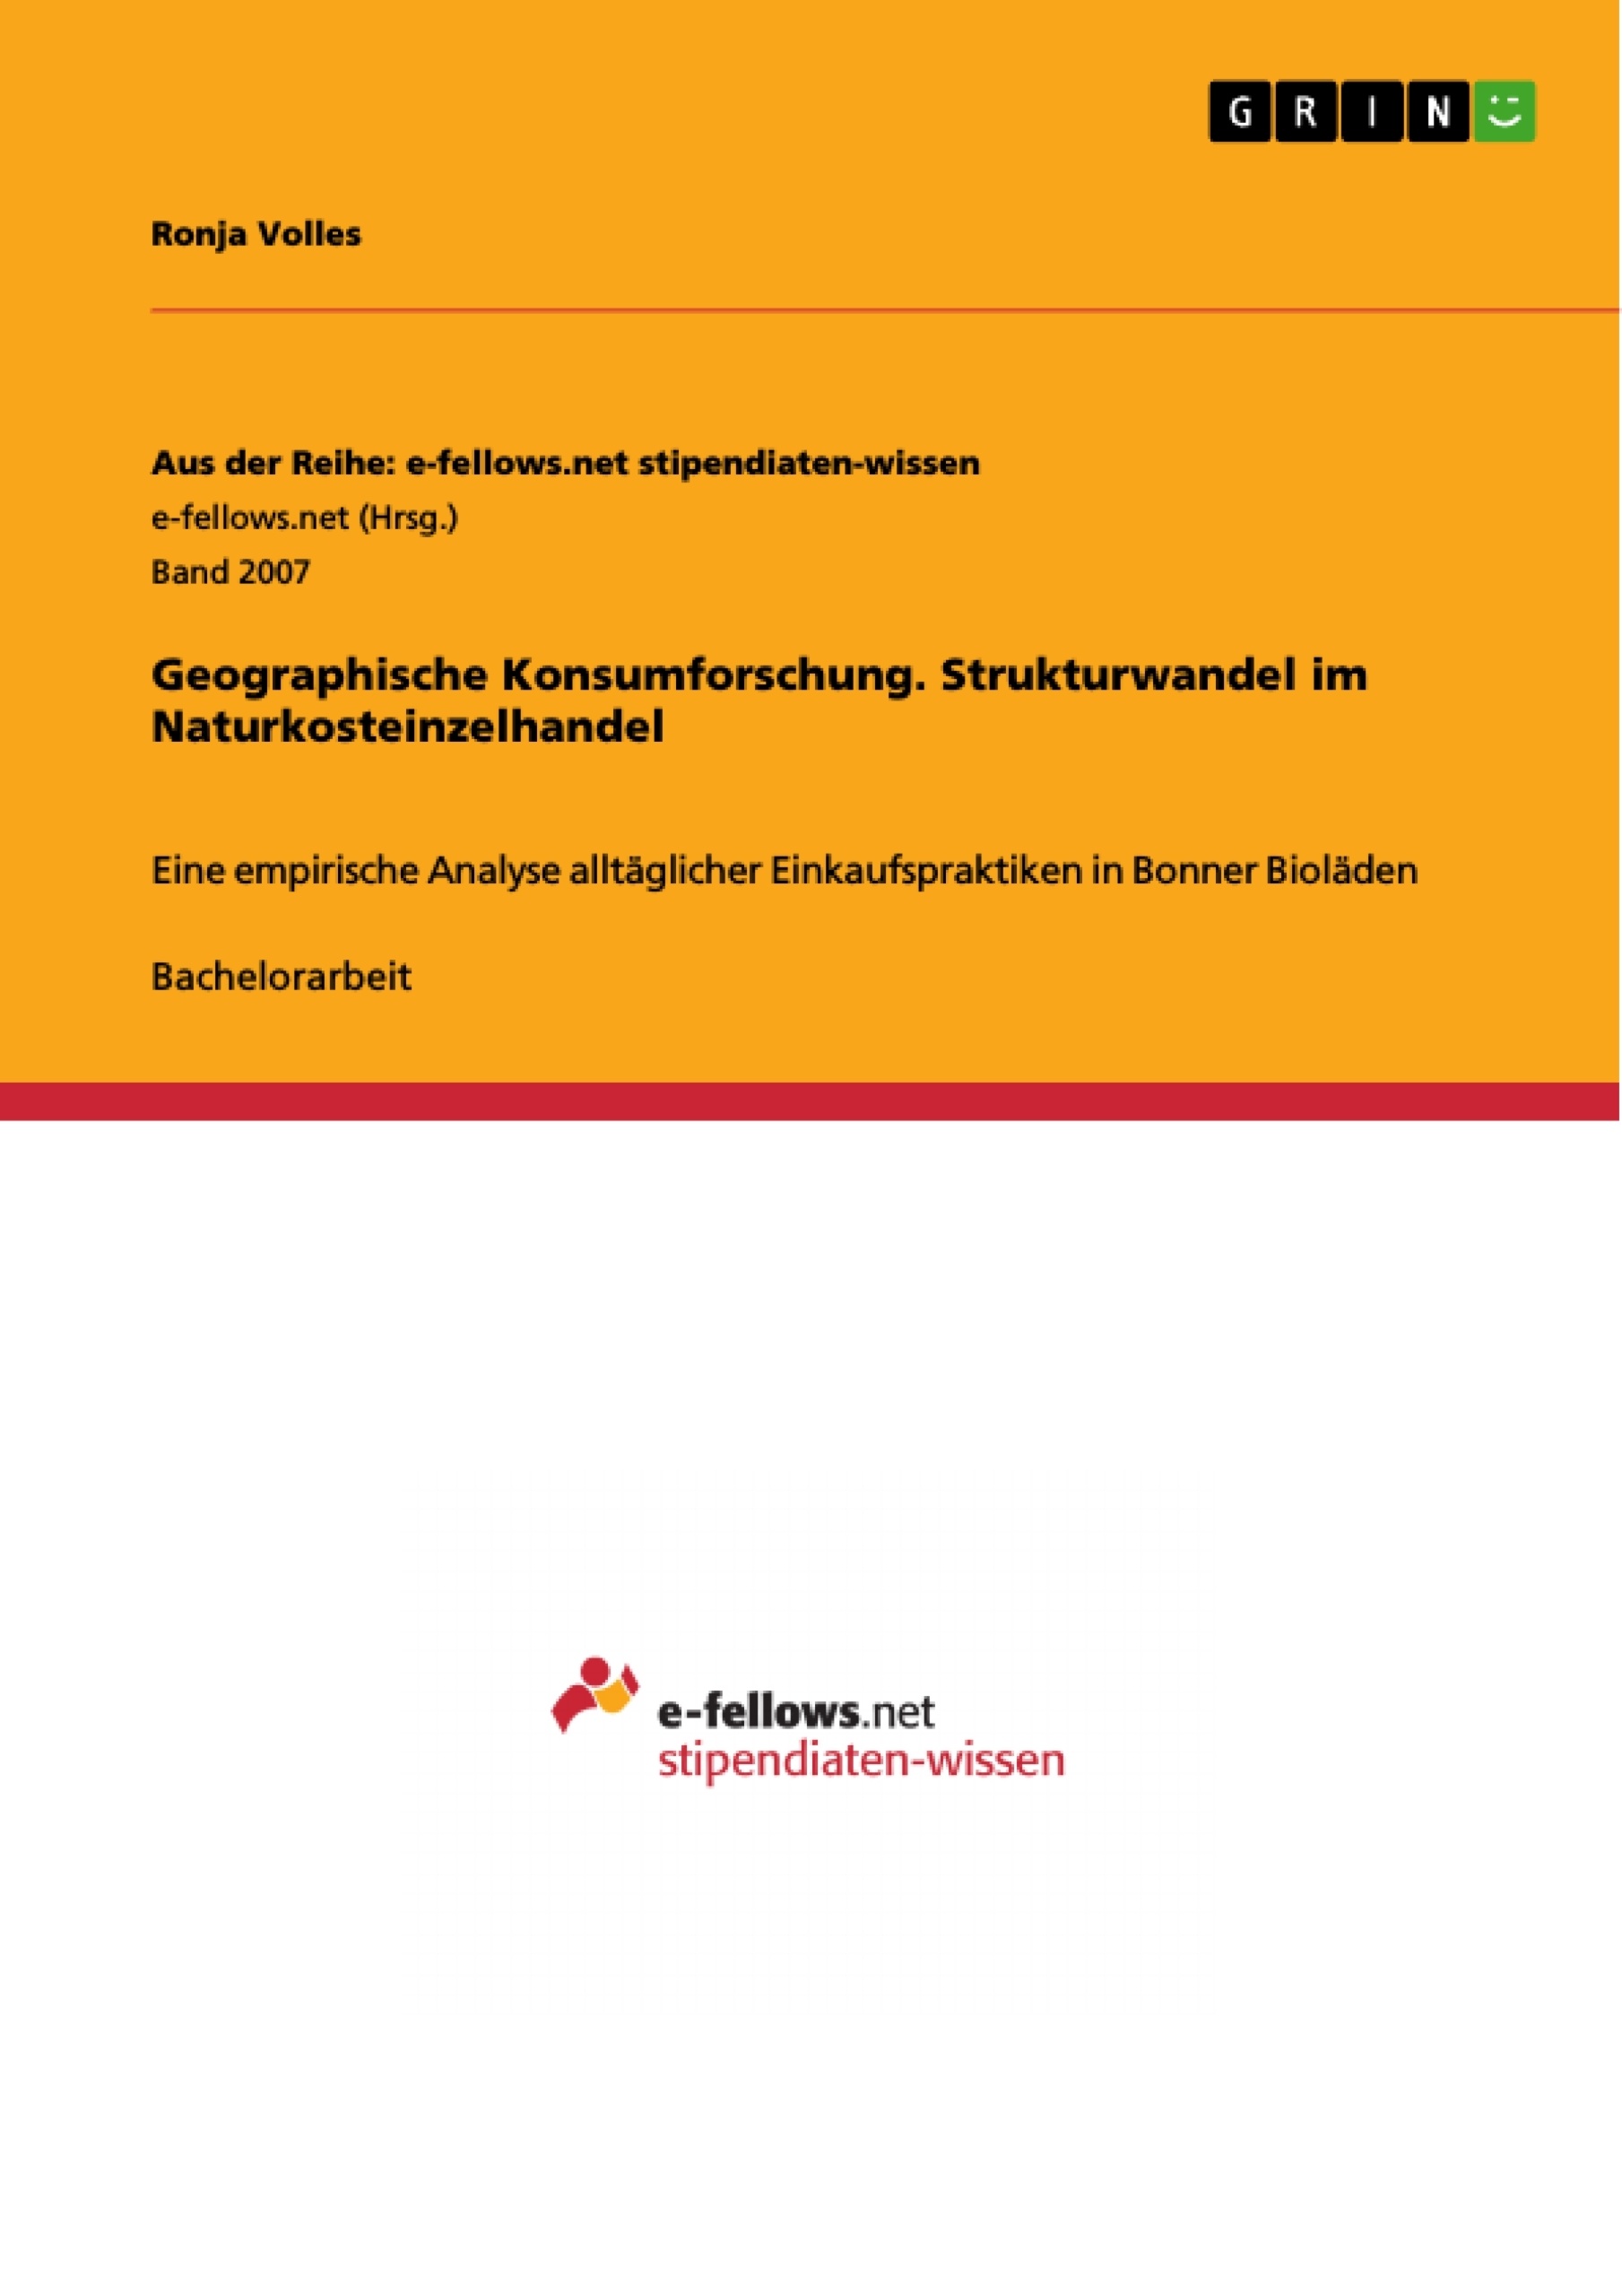 Titre: Geographische Konsumforschung. Strukturwandel im Naturkosteinzelhandel